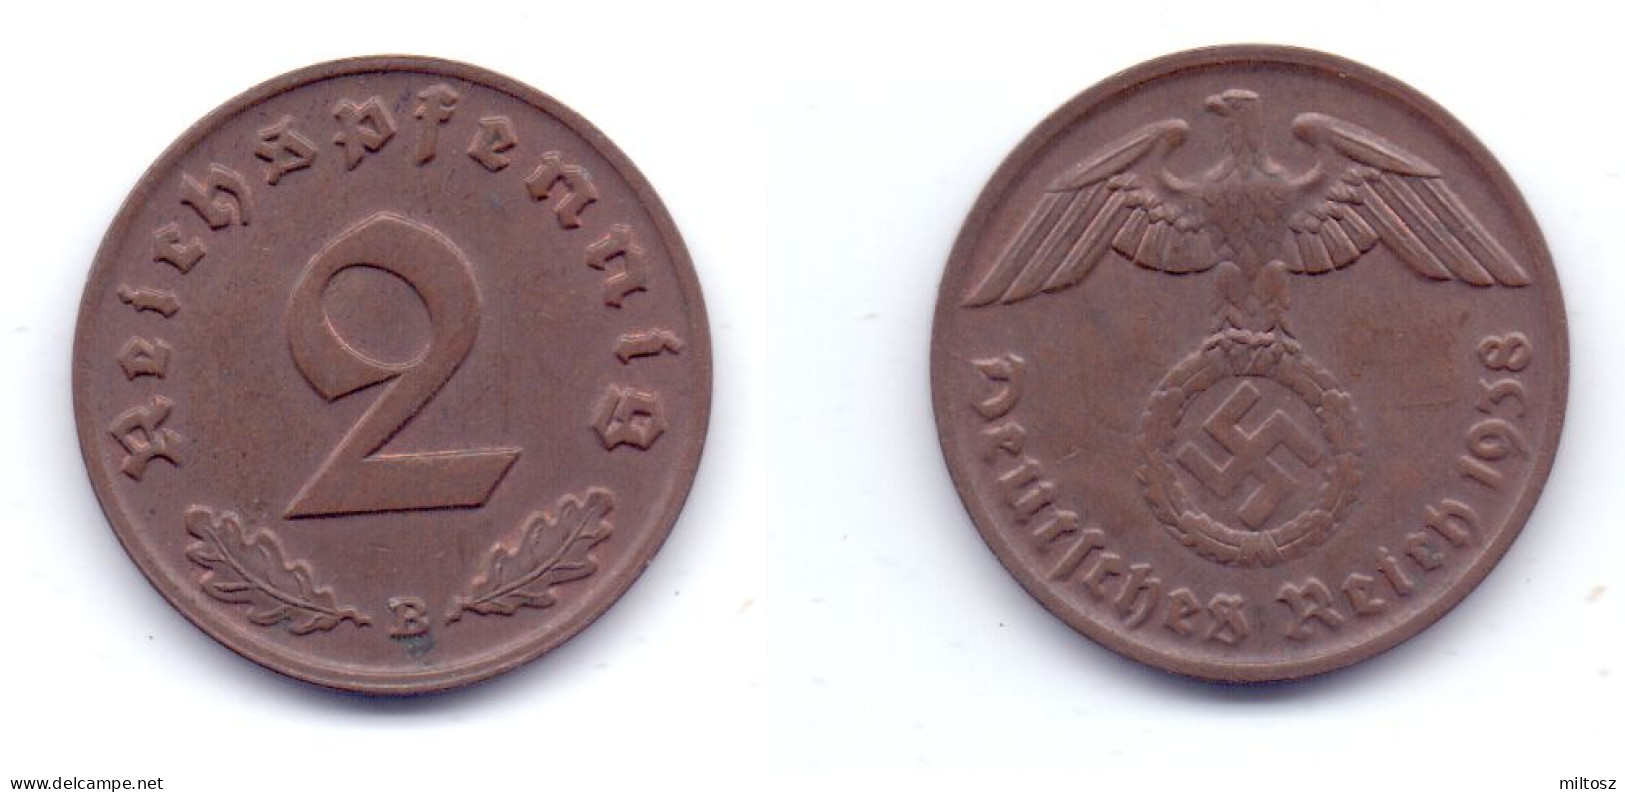 Germany 2 Reichspfennig 1938 B 3rd Reich - 2 Reichspfennig